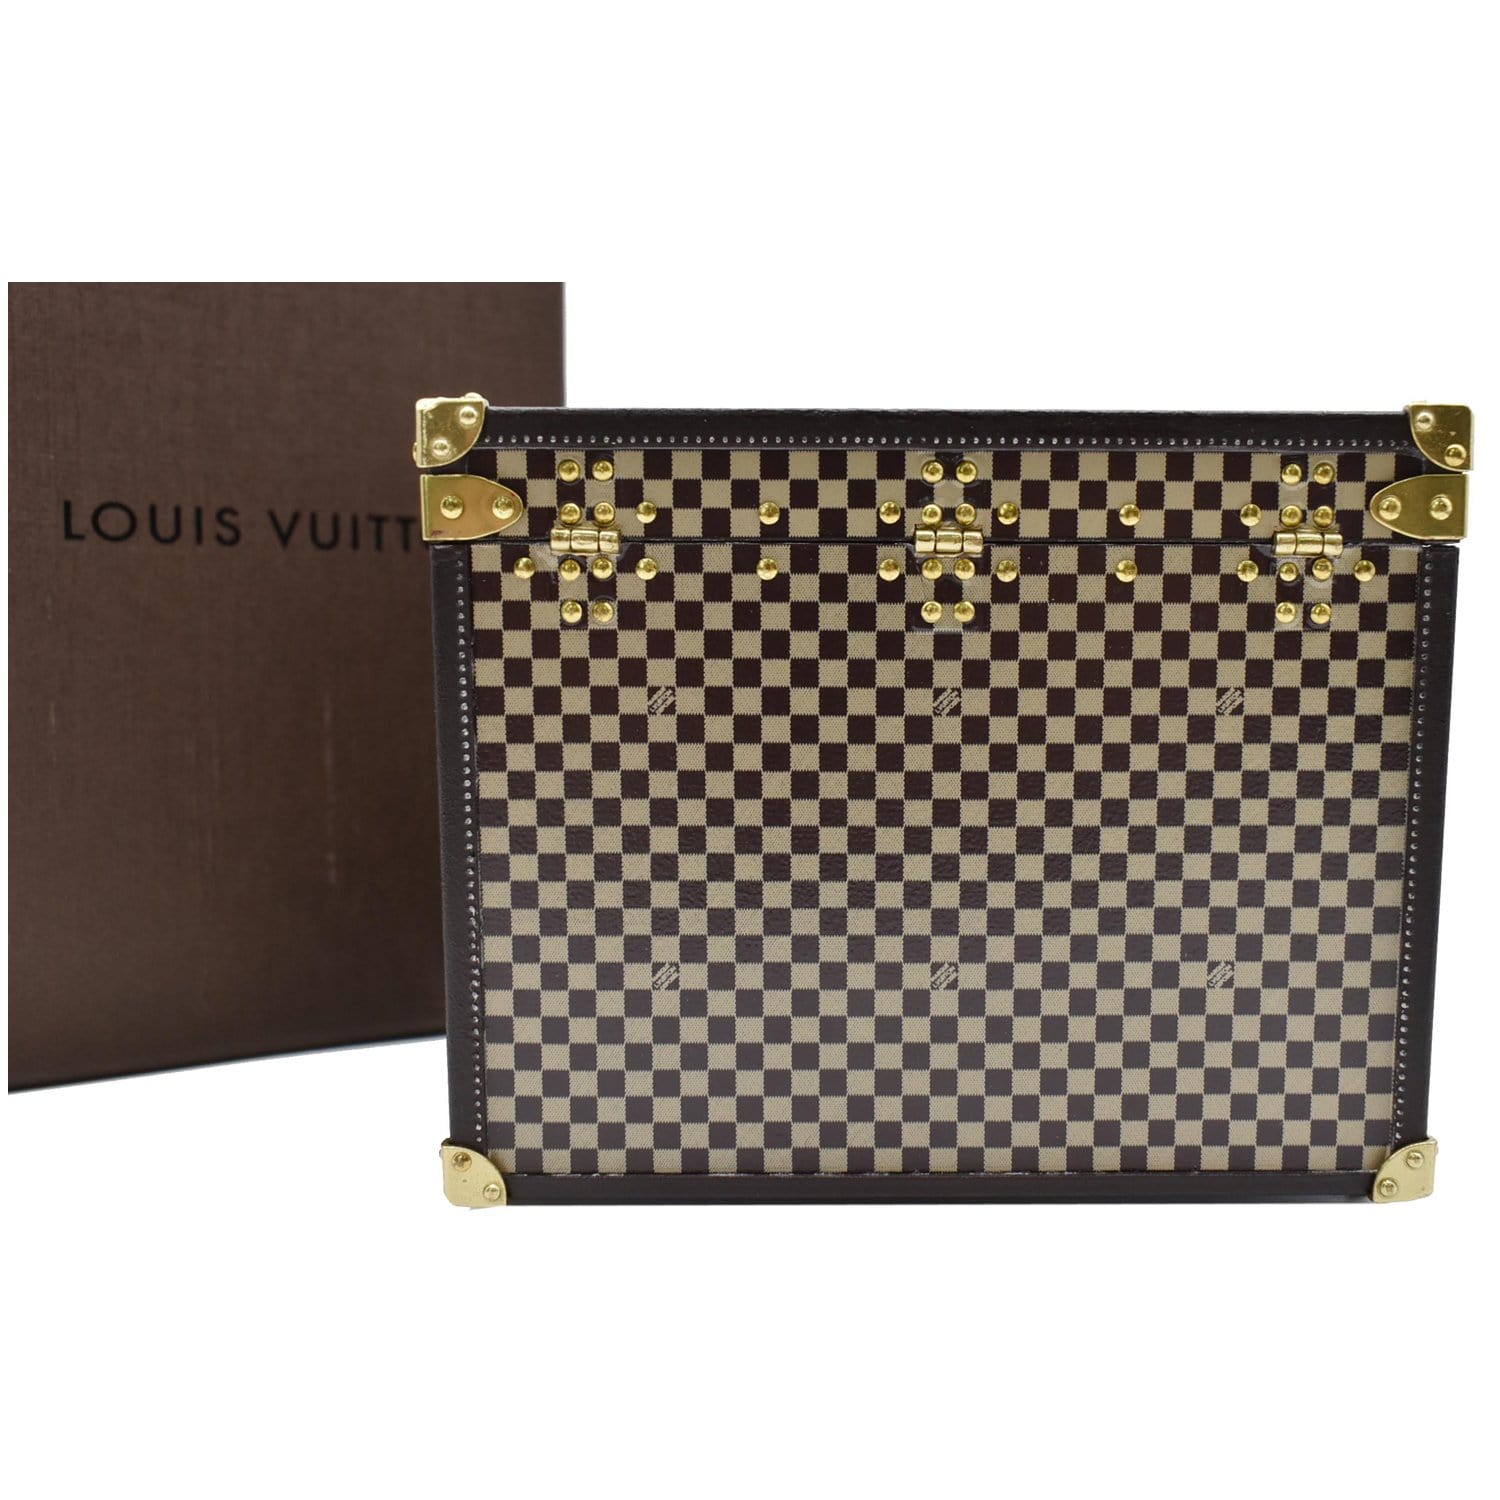 An Authentic Louis Vuitton Bear Pendant in Original Box - Artedeco - Online  Antiques